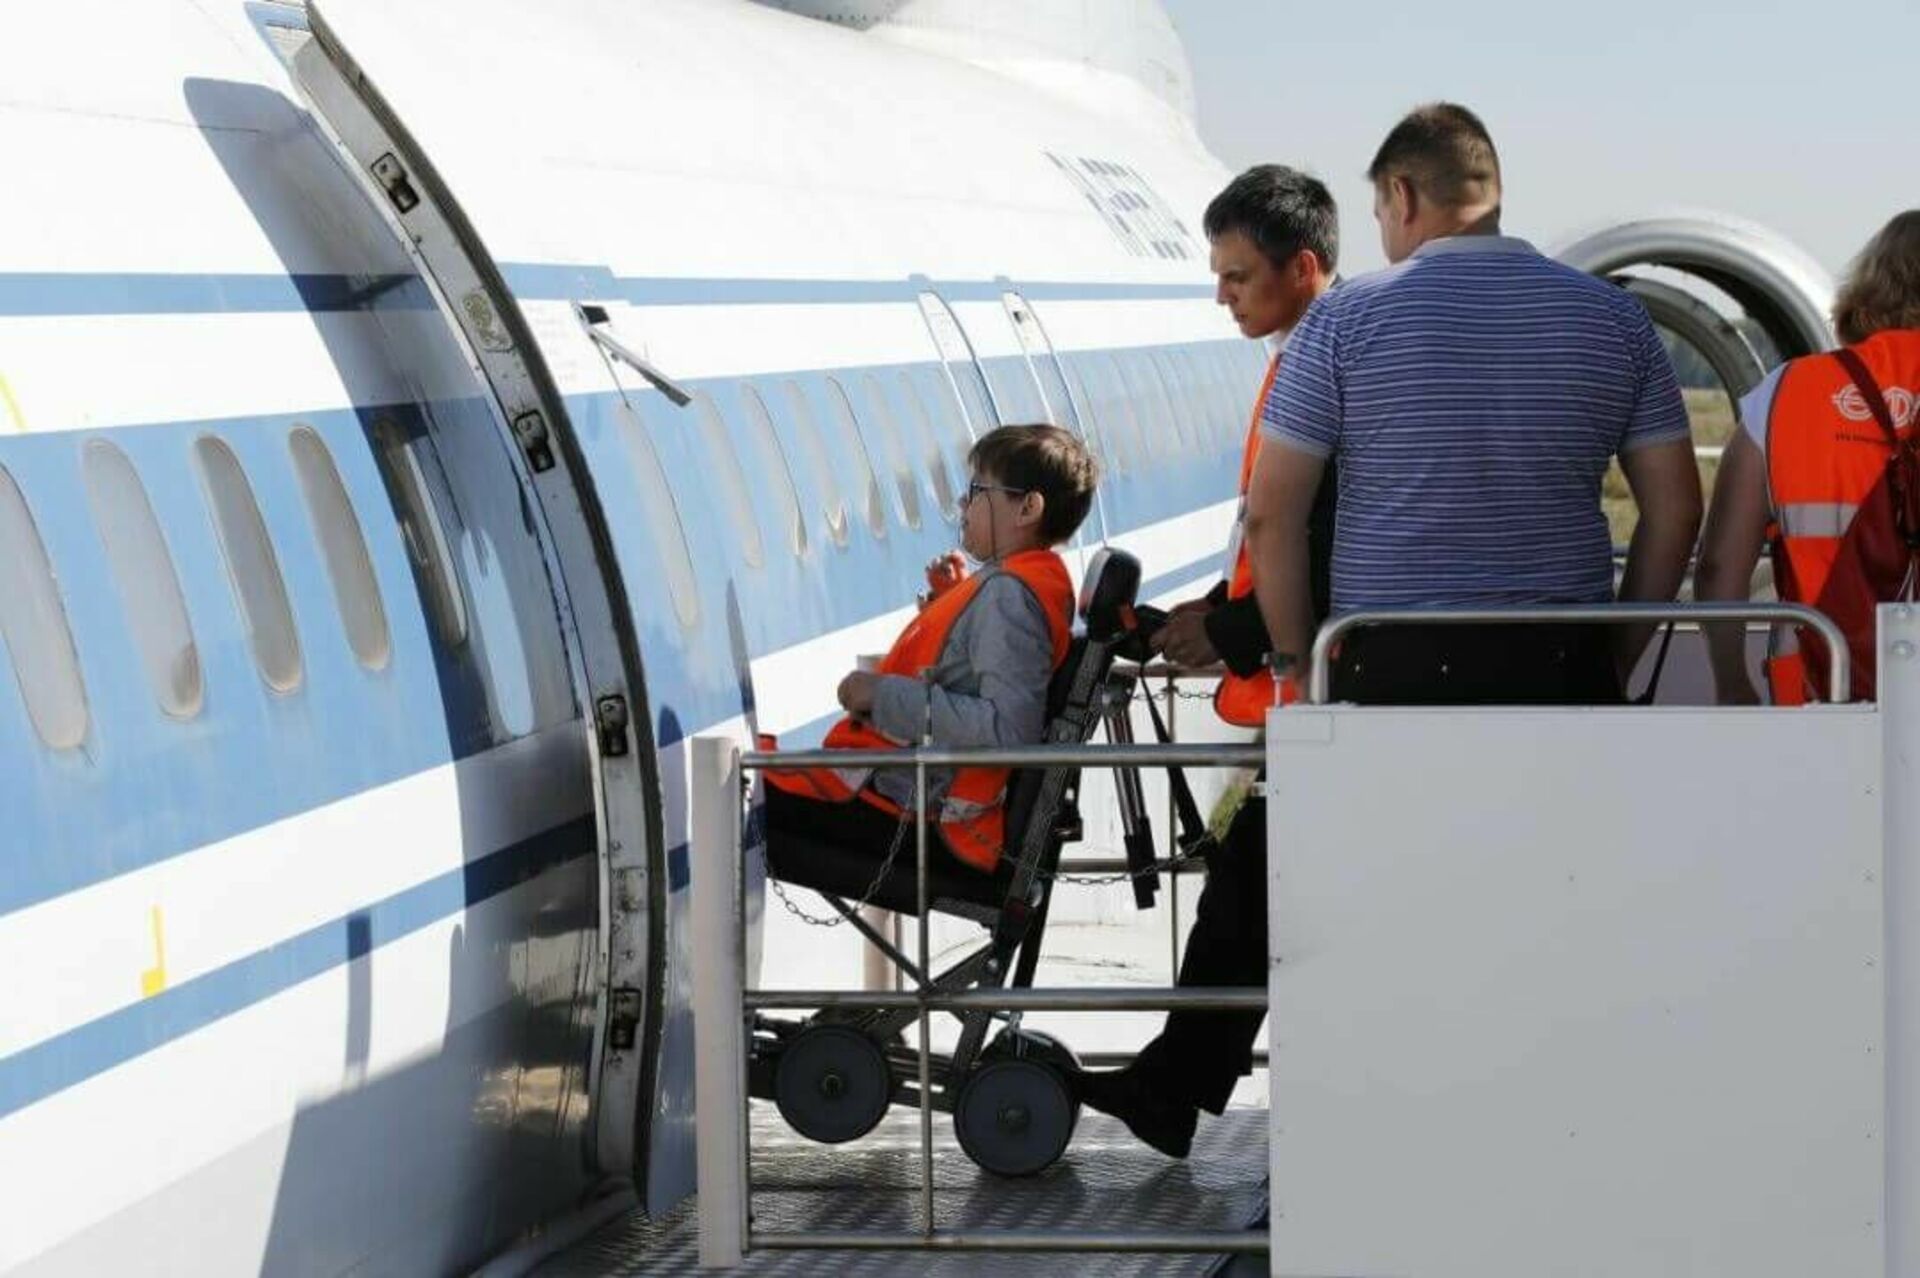 Перевозка льготного. Инвалид в самолете. Авиатранспорт для инвалидов. Маломобильные пасжиры в аэрлопорт. Пассажиры с ограниченными возможностями аэропорт.